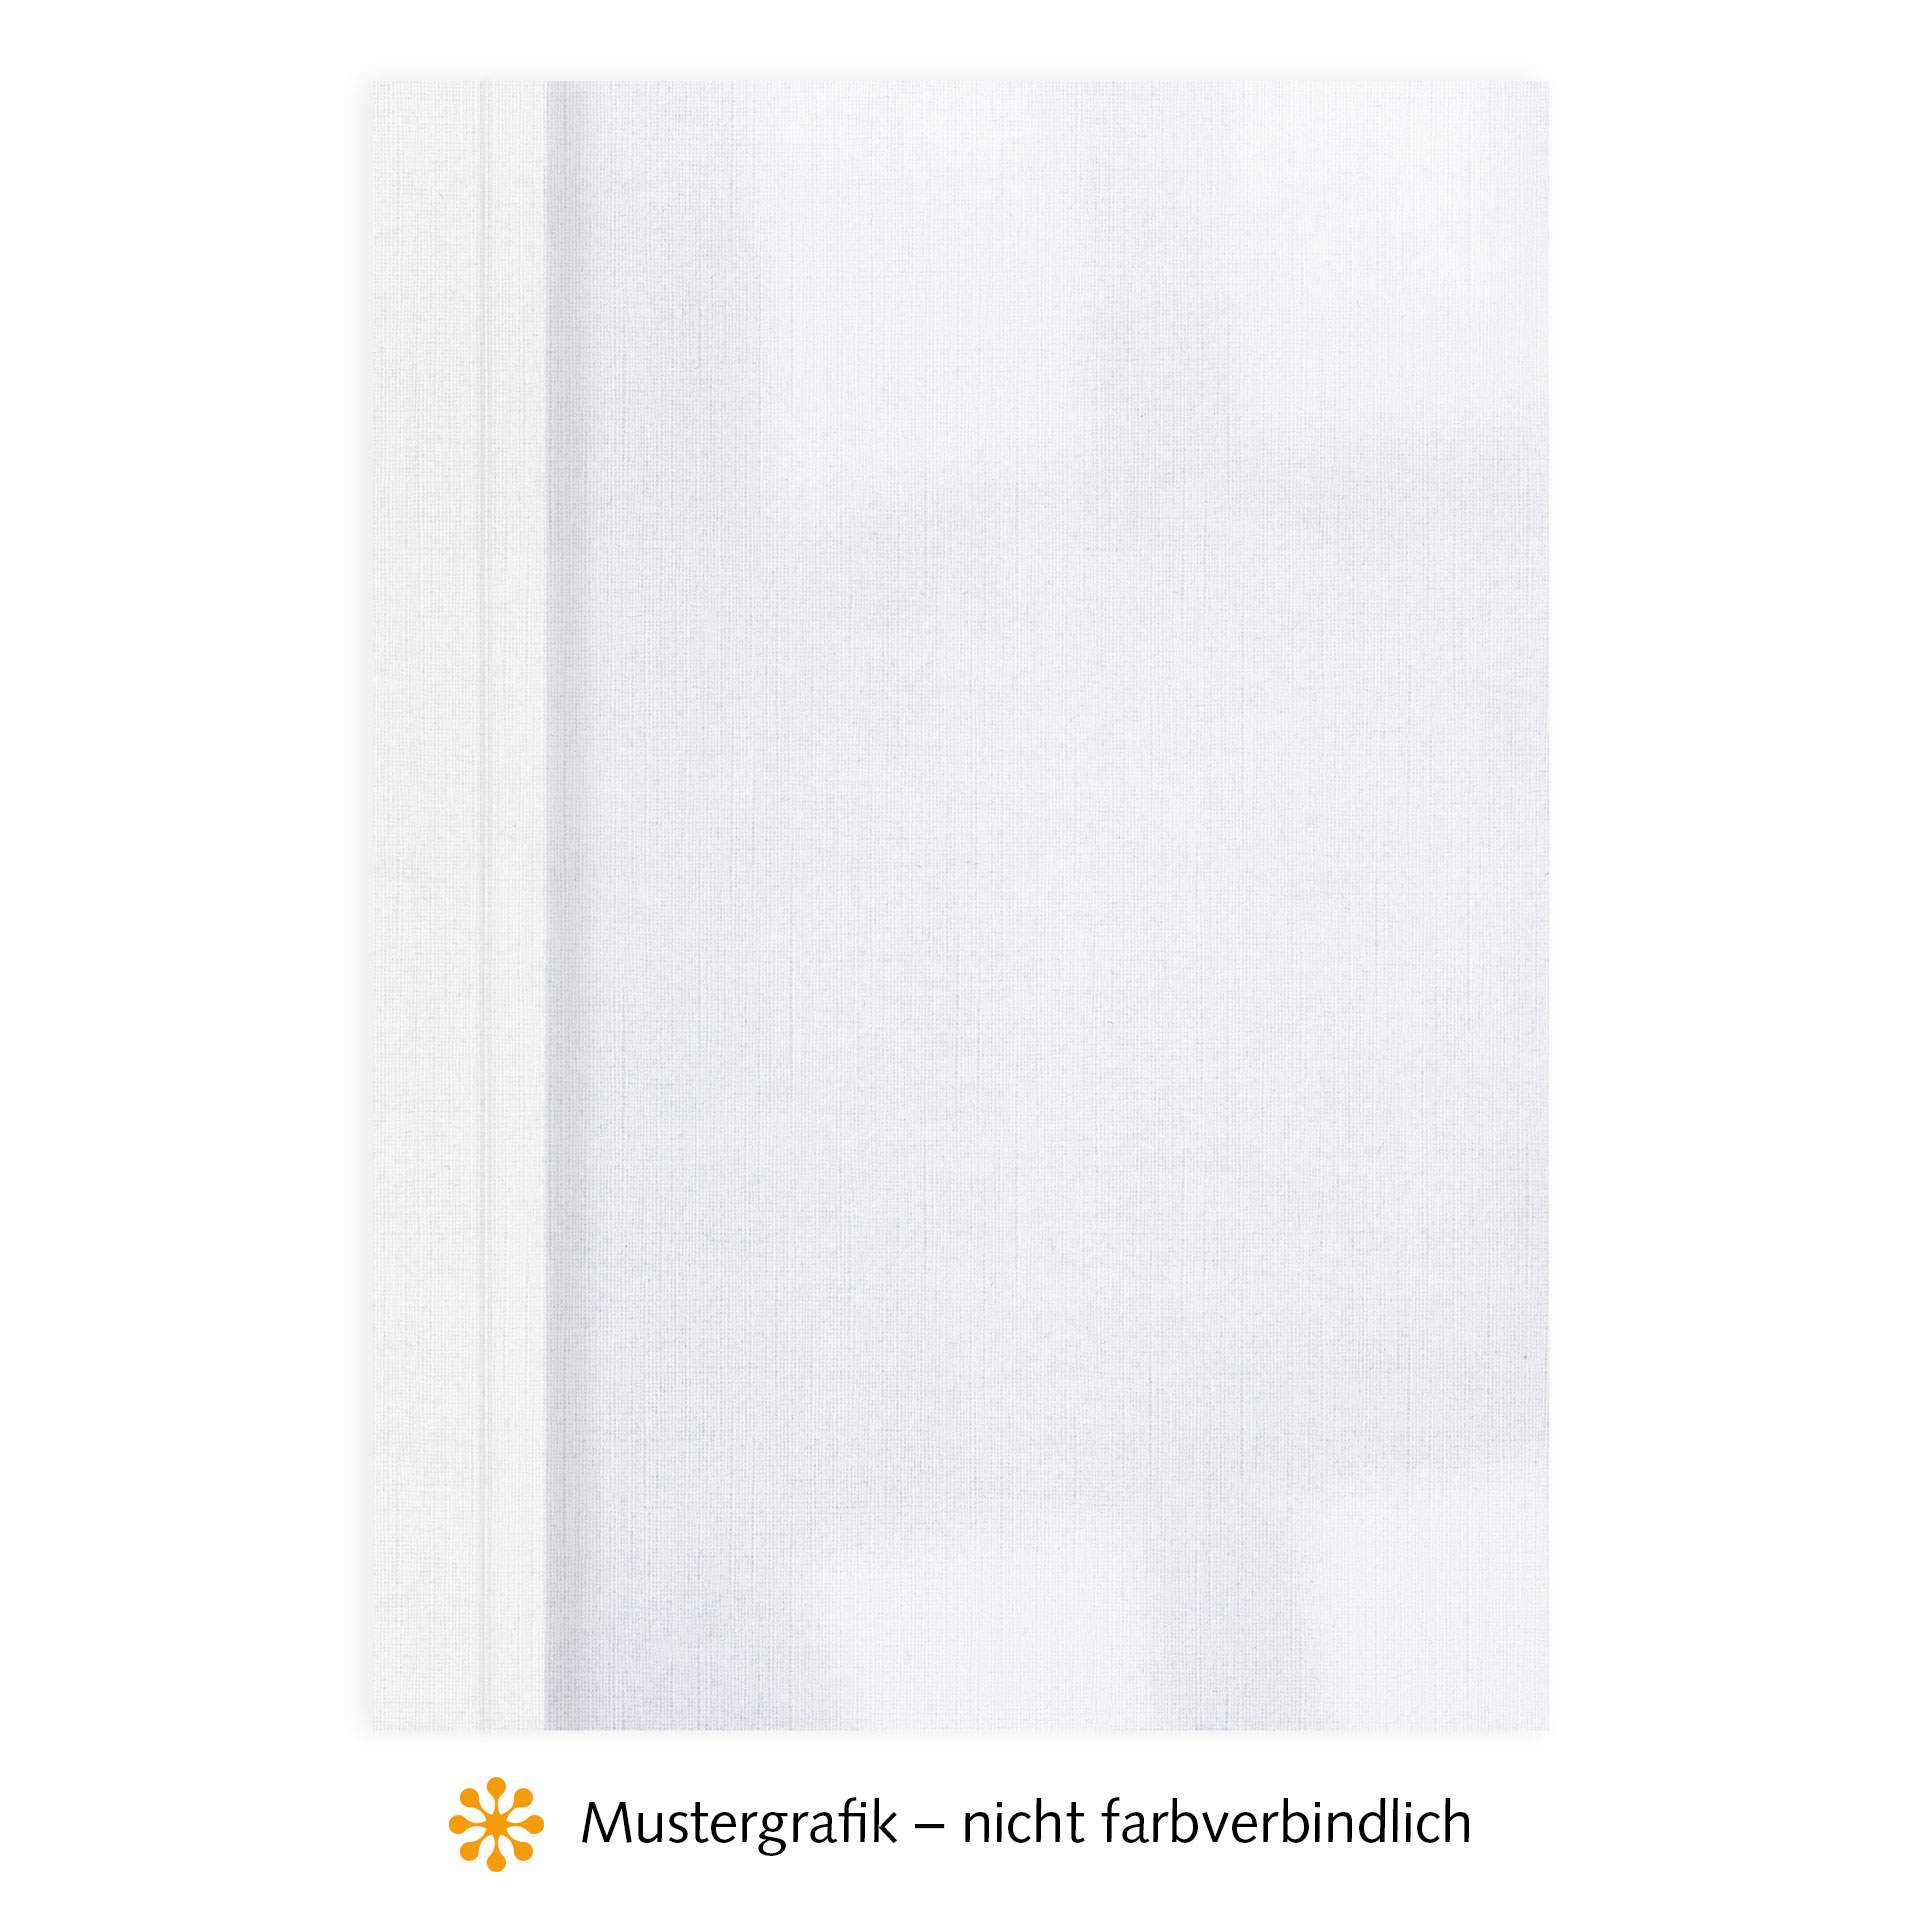 Ösenmappen DUO Cover, Vorderseite Folie KLAR transparent, Rückseite Karton Leinen, Weiß, 2 mm, 11 bis 20 Blatt